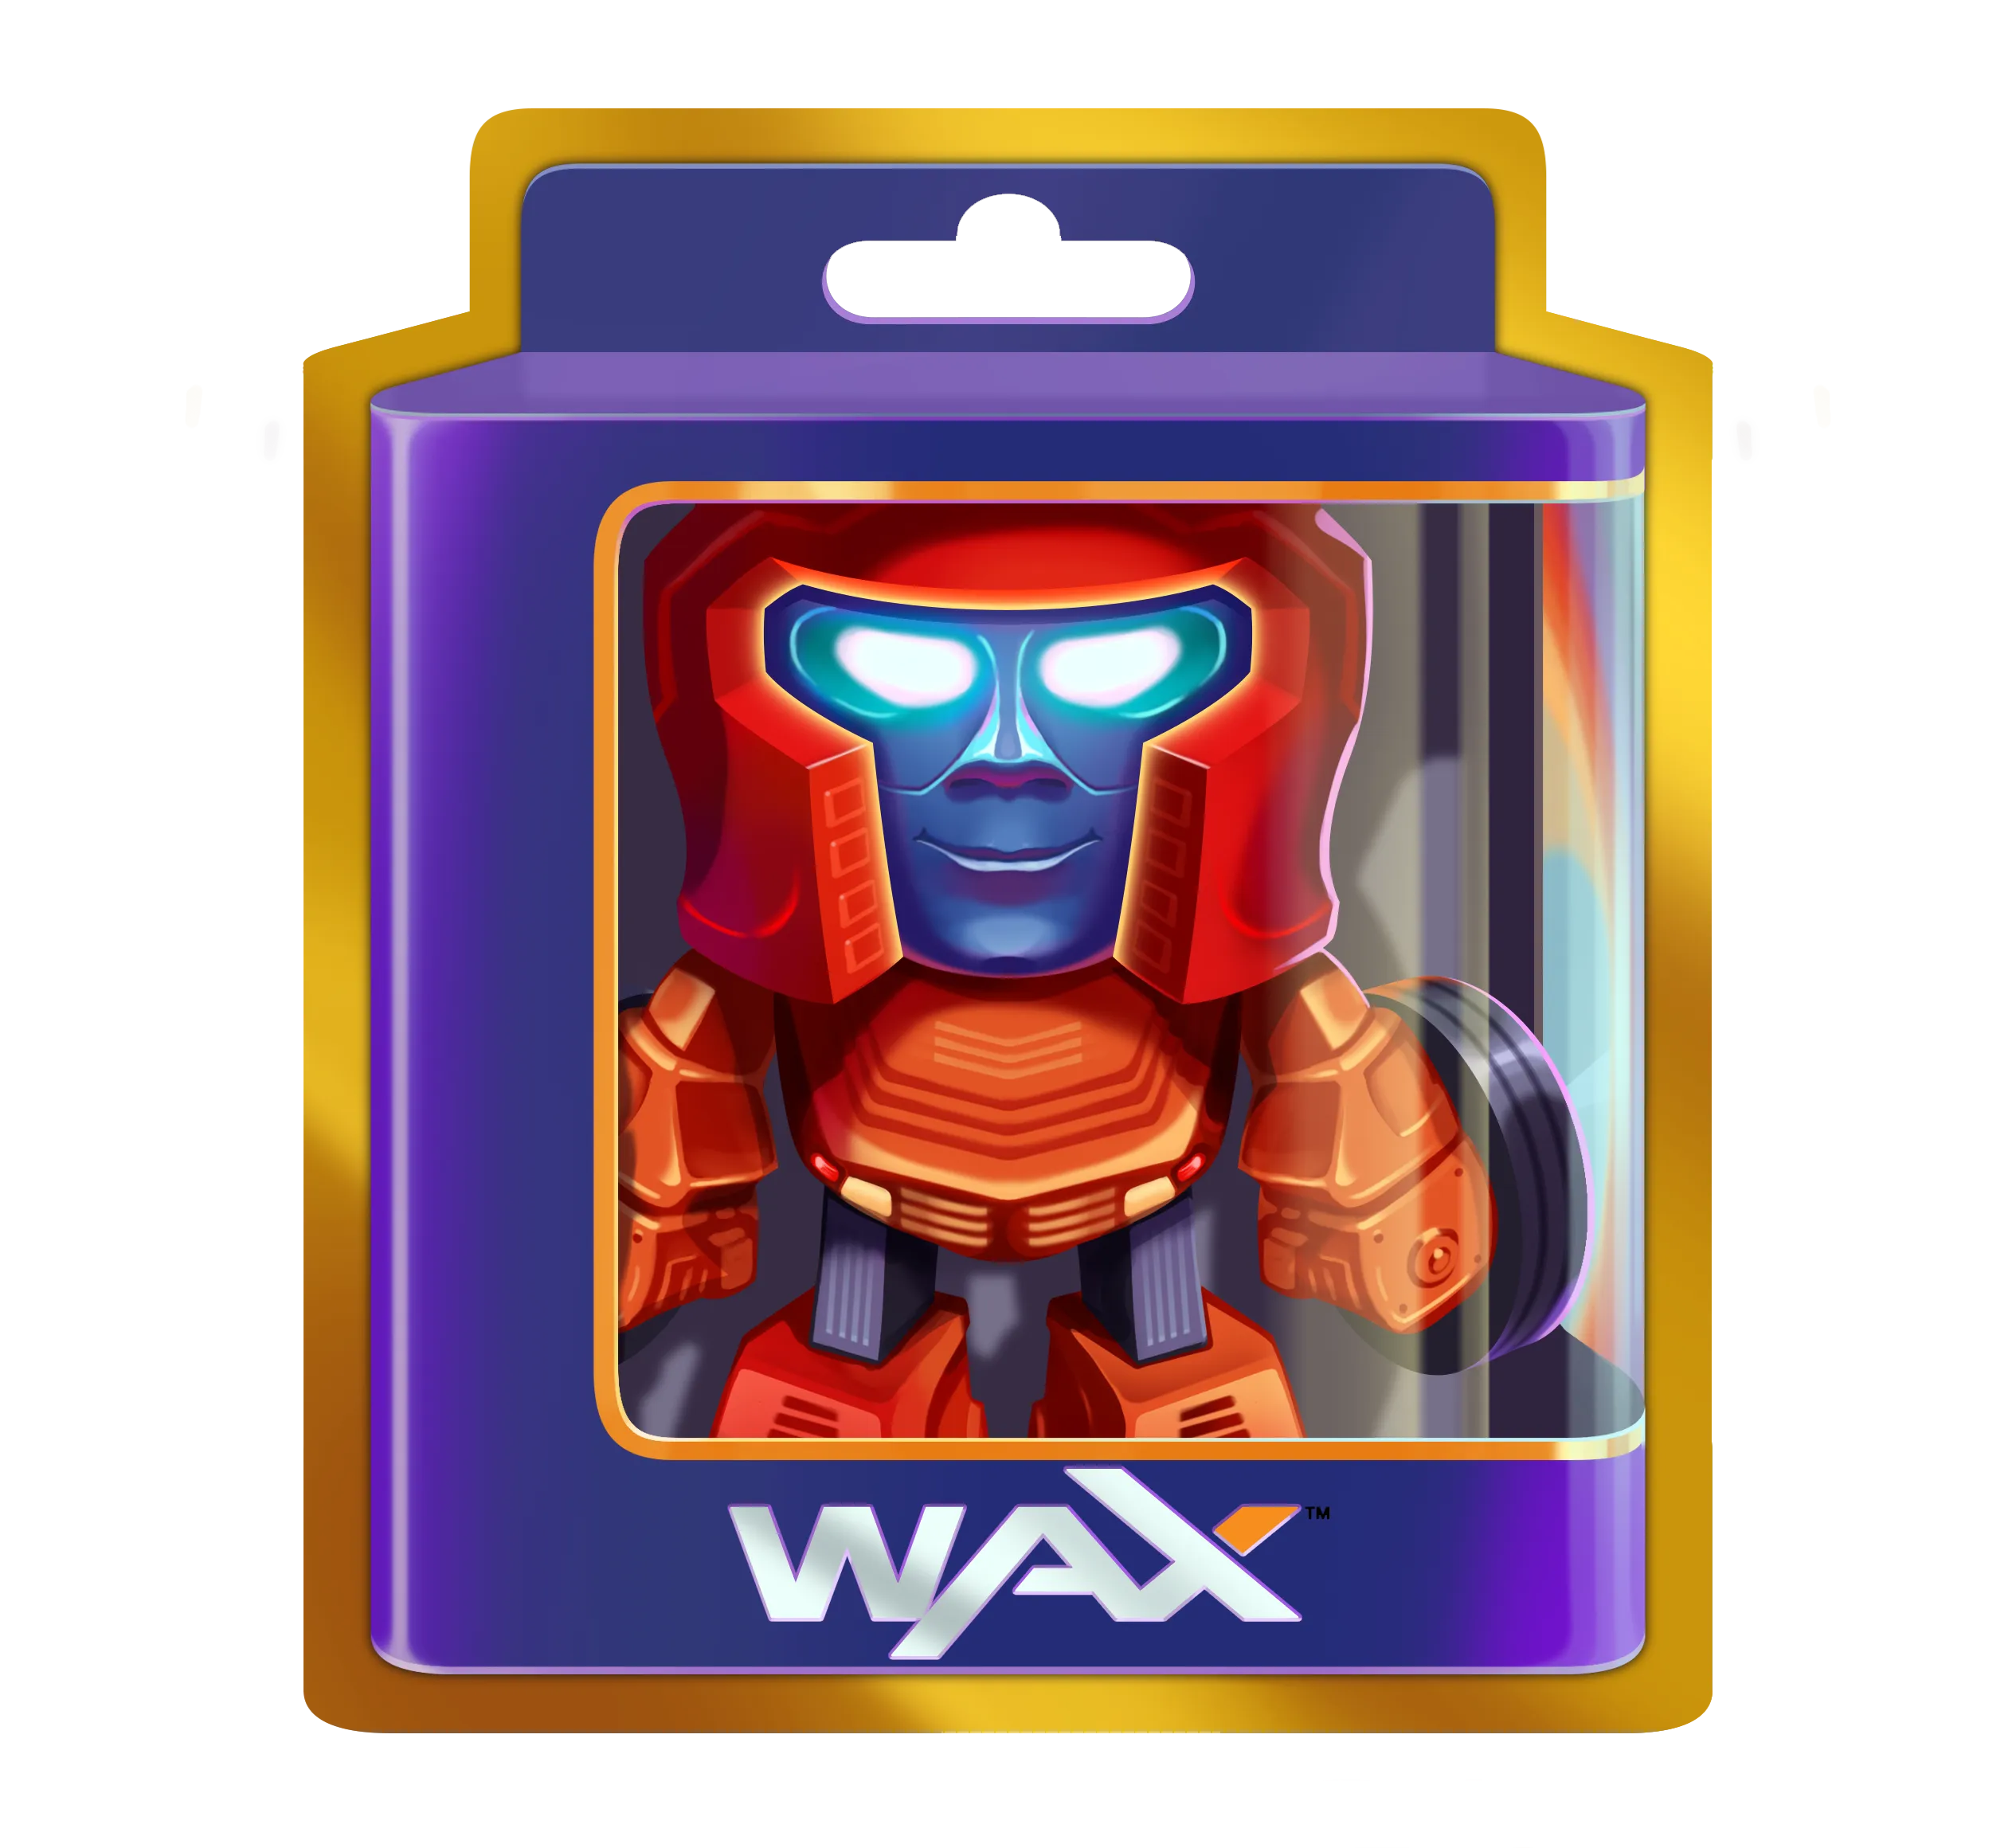 Juguete digital WAX en una caja.